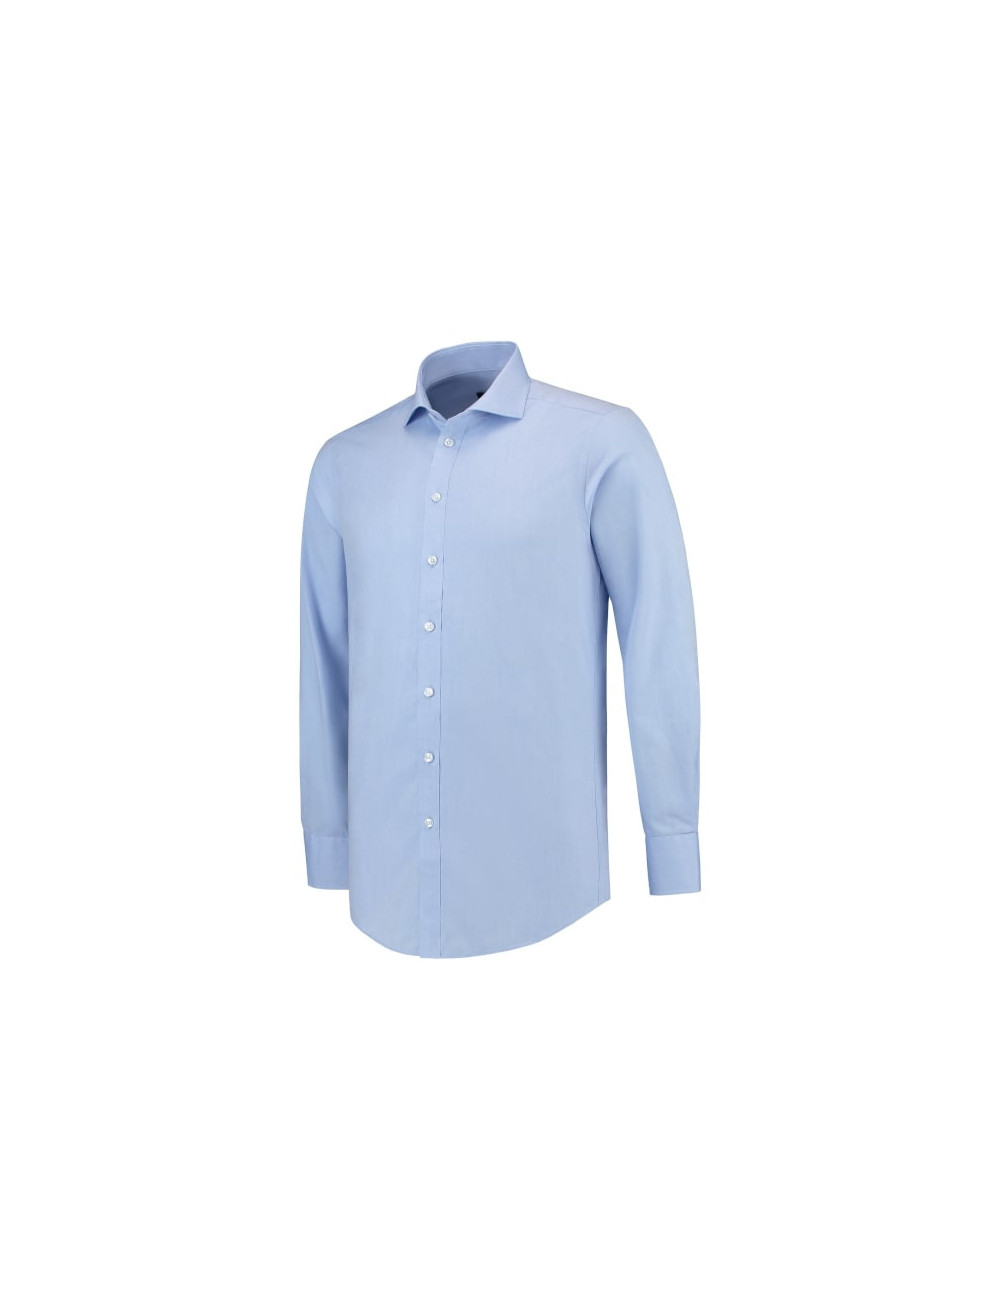 Tailliertes Herrenhemd T21 blau Adler Tricorp